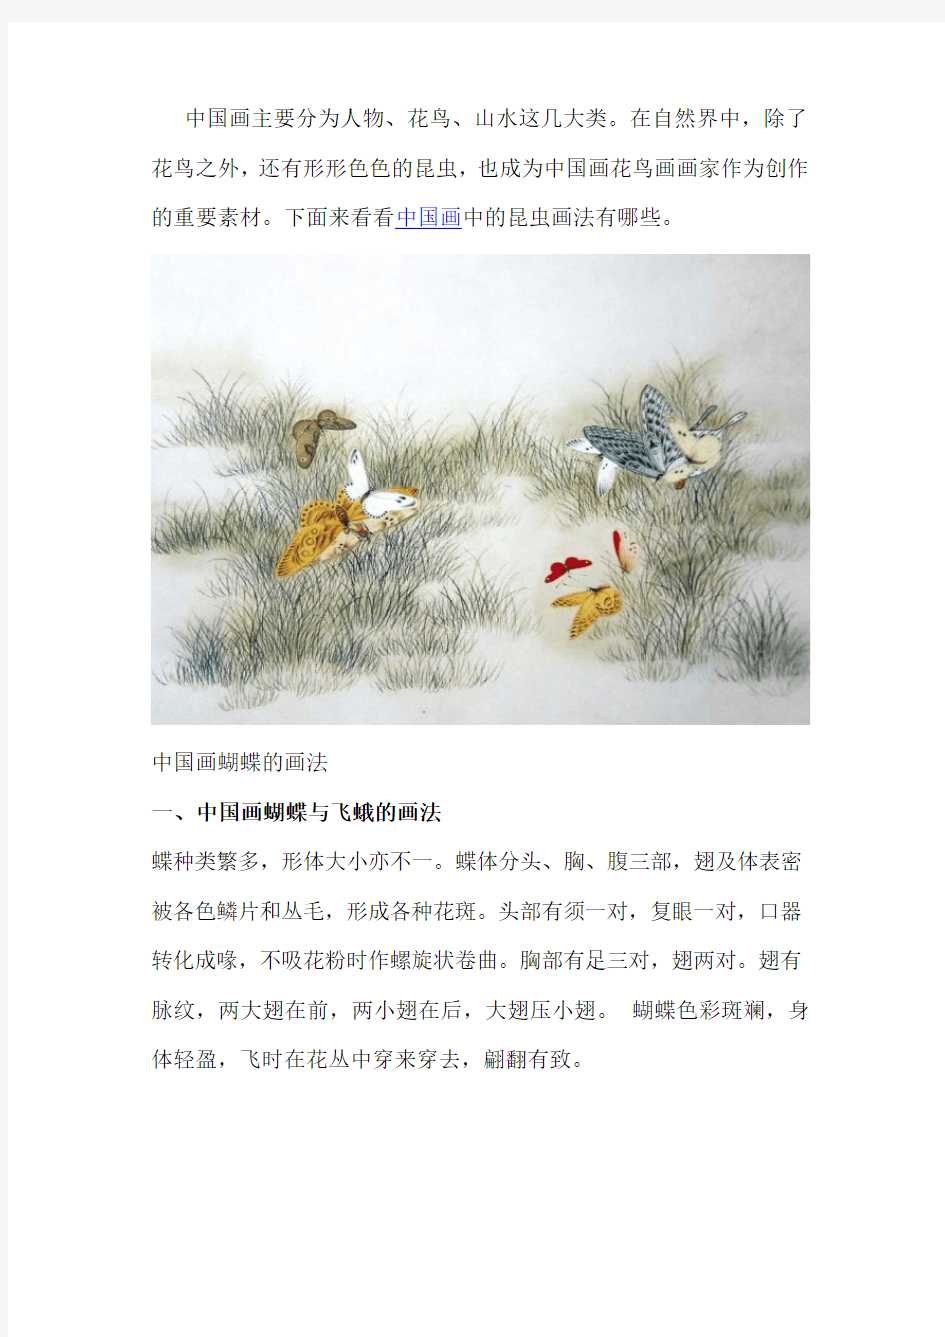 中国画昆虫的画法有哪些